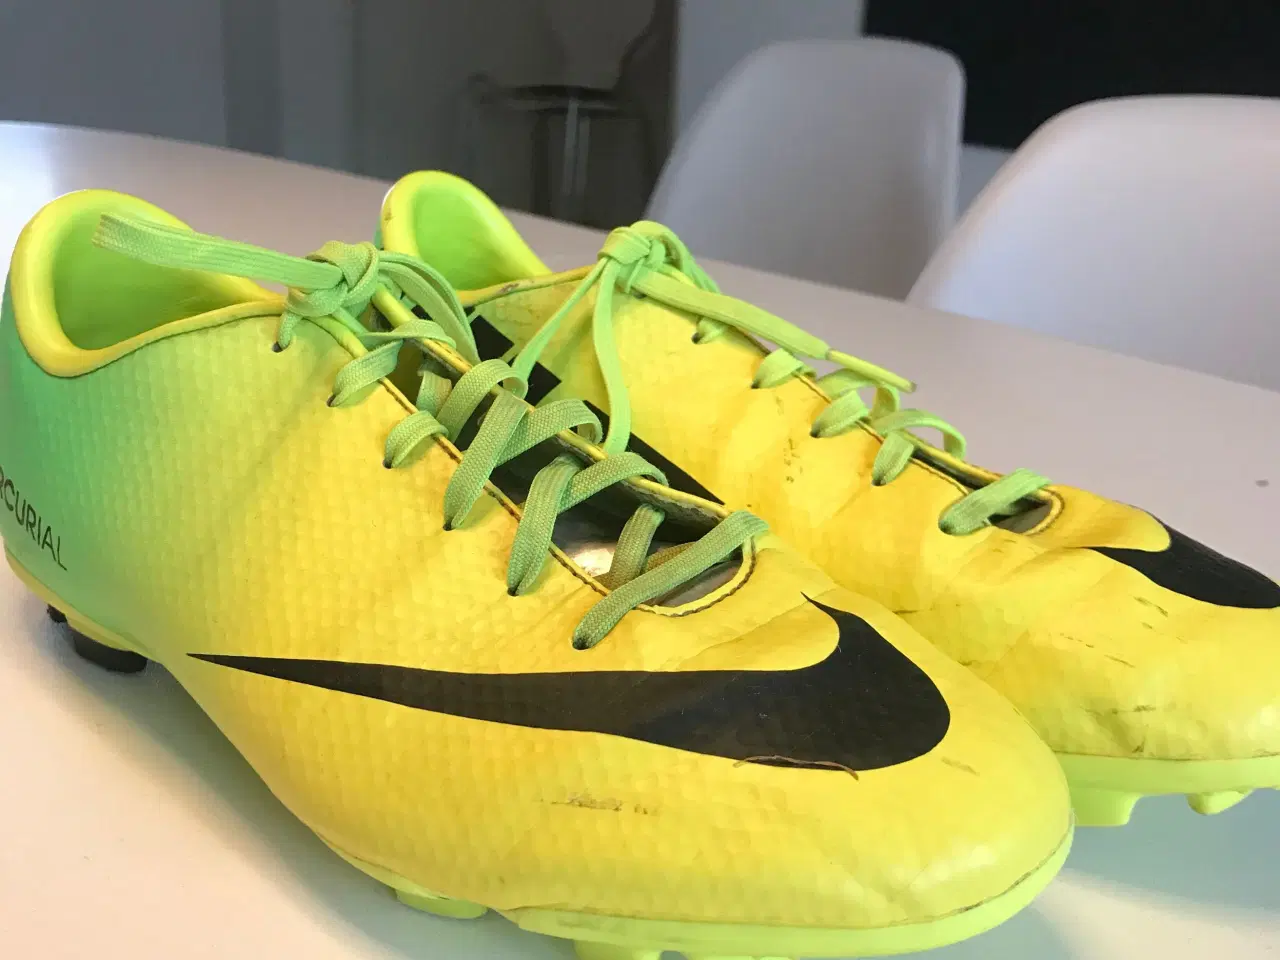 Billede 1 - gule og grønne fodboldstøvler i en str 38,5